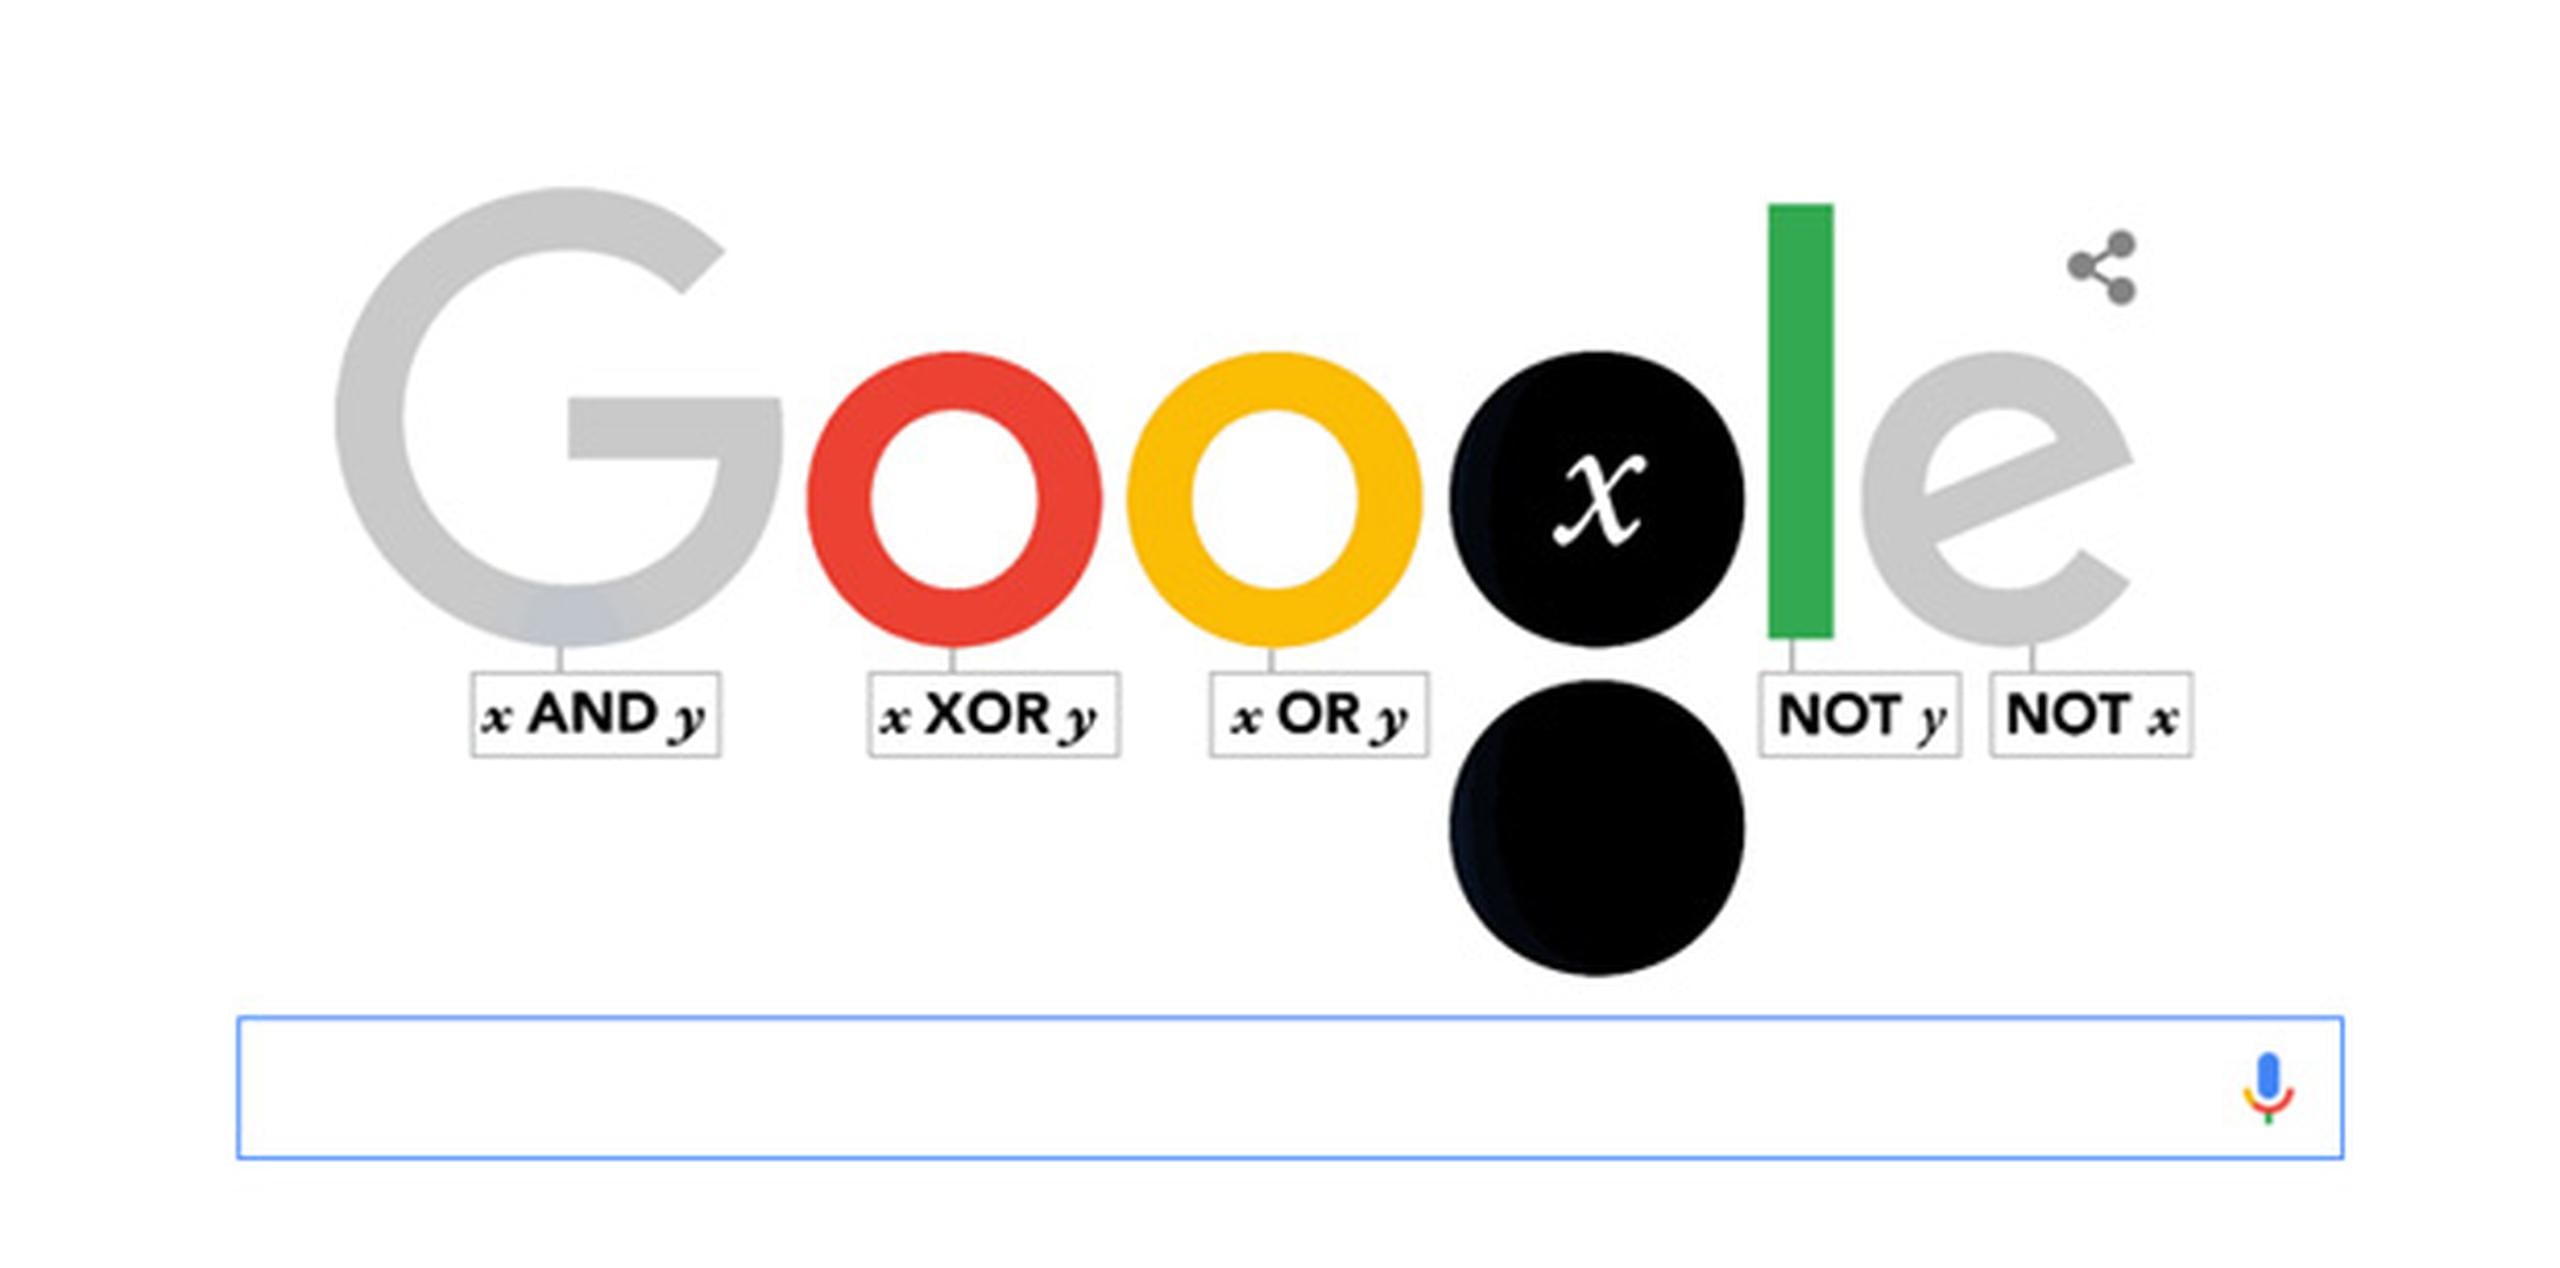 "Es justo decir que sin George Boole, no habría Google", señala el buscador.